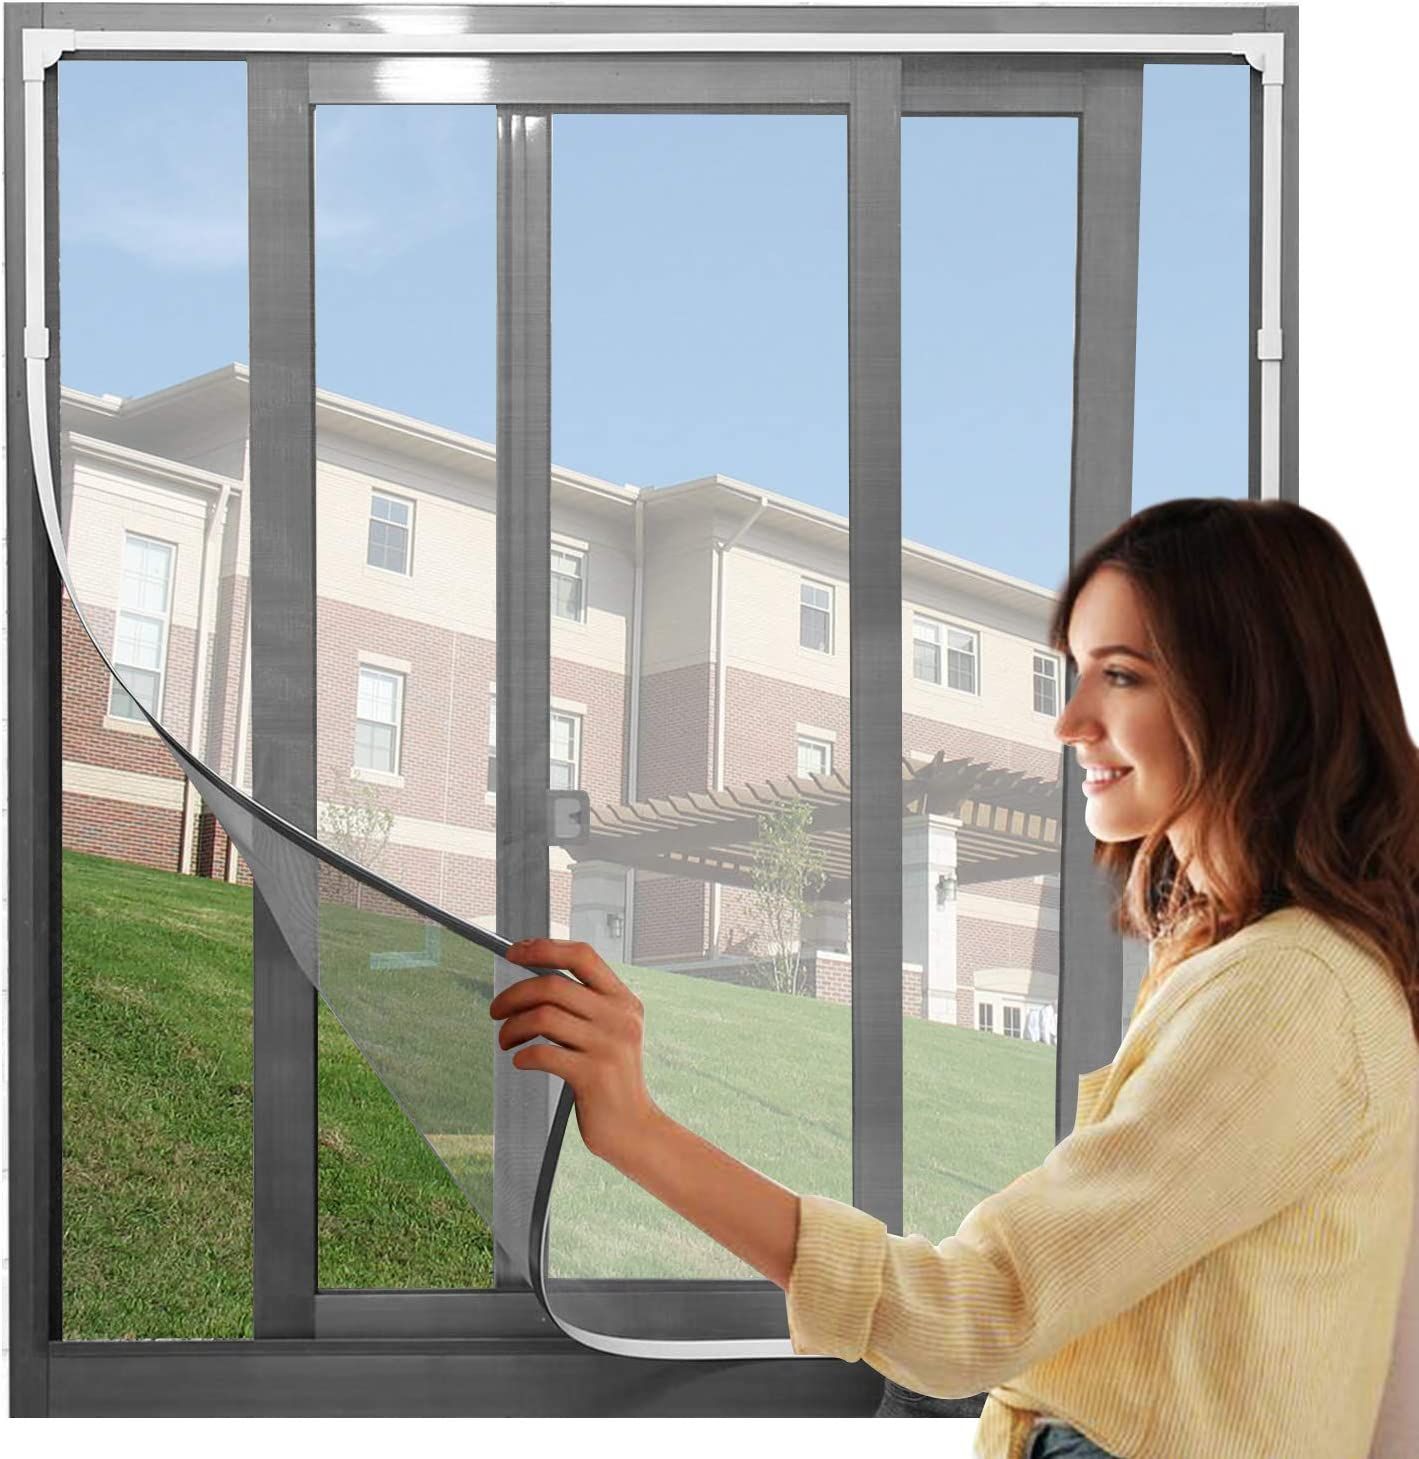 商品情報商品説明サイズ： 150*150CM色：ネット：灰/白、枠：ブラウン/グレー/ホワイト予め窓のサイズを確認してからご注文してください。【抜群な防虫・防蚊】：こちらの虫除け網戸は、高密度メッシュで微細な虫・蚊の侵入も防ぎます。隙間もなく全面覆う窓用網戸タイプなので、虫除け網戸を窓枠に設置しておくと、窓を閉めなくても、虫や蚊などの侵入を気にせず、空気の通しが良くできます【カット可能・サイズ調節可能】：この防虫ネットは、カットによるサイズ調節が可能です。お宅の窓大きさに完璧に合わせて防虫ネットをカットできます。だから、この防虫ネットはどんな窓枠にも網戸がぴったりと納まります。この防虫ネットキットがあれば、網戸を作るお手間もお金も節約します【工事不要・取付簡単】：蚊よけあみどは粘着テープ付きマグネット式なので、木製・鉄製・アルミ製など窓枠の素材を選ばず、簡単に取り付けることができます。 取り付け＆取り外しが簡単＆収納便利、ツールは不要です！付属のテープだけでドアフレームに固定するだけで完了です。使わない季節には取り外し、折りたたんでコンパクトに収納できます、女性の方でも簡単に操作できます。【通風性】：この蚊よけ網戸の開口率が高く風通しも優れています。十分な風通しも得ることができます。夏には、エアコンを使わずに本品を取り付けることによって、空気の入れ替えが出来、風通しが良くなり涼しく暮らすことができます【優れた耐久性】：こちらの虫よけ網戸は、永久磁石を採用し、繰り返し開閉できます。高品質のメッシュを使用し、精密縫製と高密度のメッシュ技術を採用、多くの開閉でも丈夫で損耗しません。また、虫よけ網戸は取り外せるので、そのまま丸洗いができます。お手入れもラクラクです◇ 注意事項 ◇※ ご利用のモニターによって、実物とすこし異なる色に表示される場合がございます。※ 全商品、北海道・沖縄・離島は別途 送料が掛かります。※ ラッピング対応しておりませんので、ご了承ください。※ 説明書は日本語化されていません。